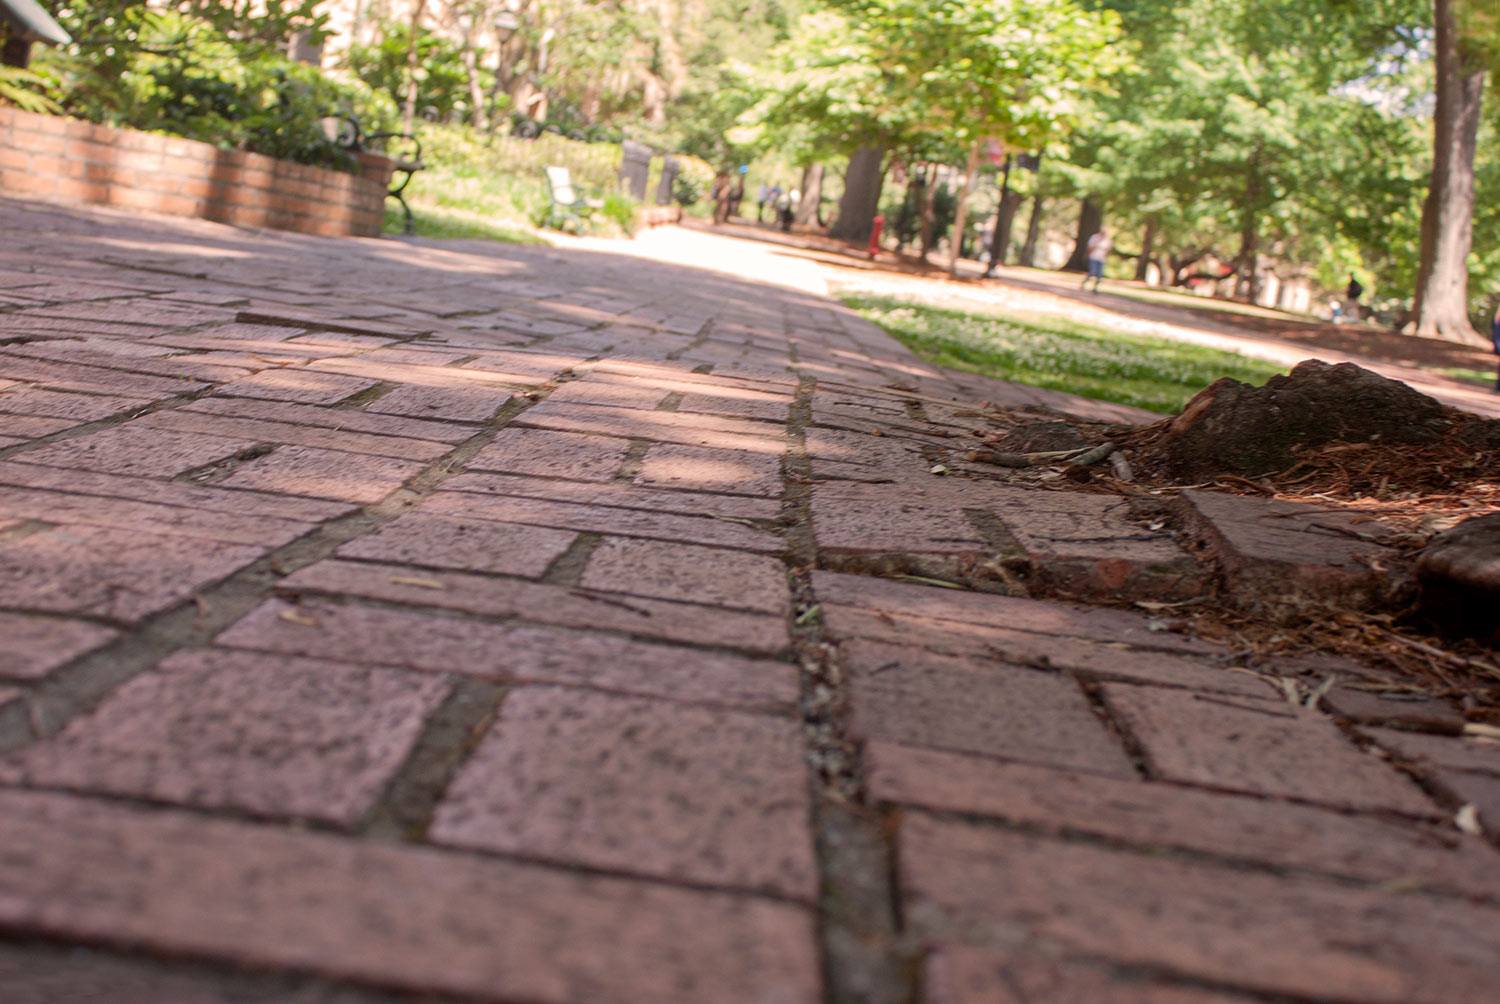 历史悠久的马蹄铁上凹凸不平的砖路。